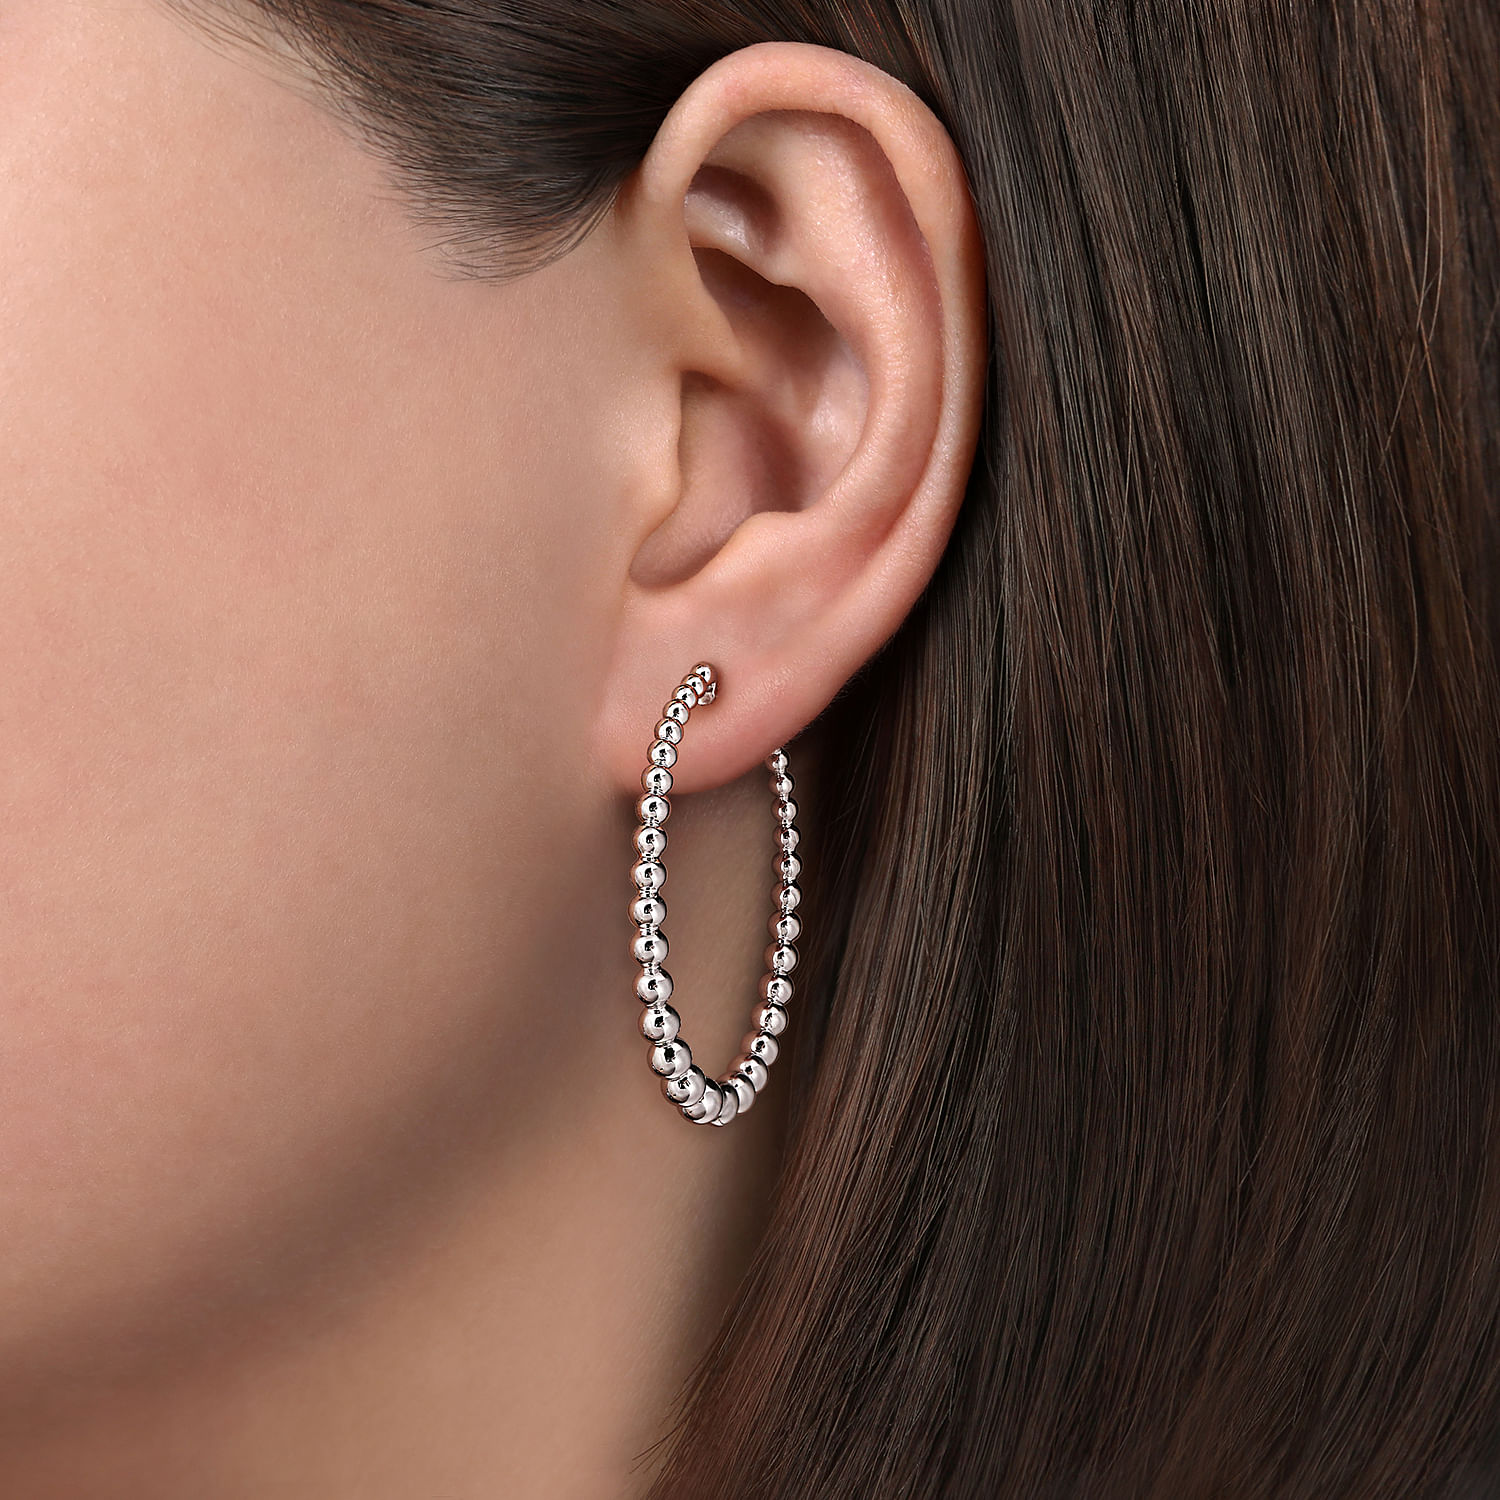 925 Sterling Silver Bujukan Graduated 40mm Classic Hoop Earrings